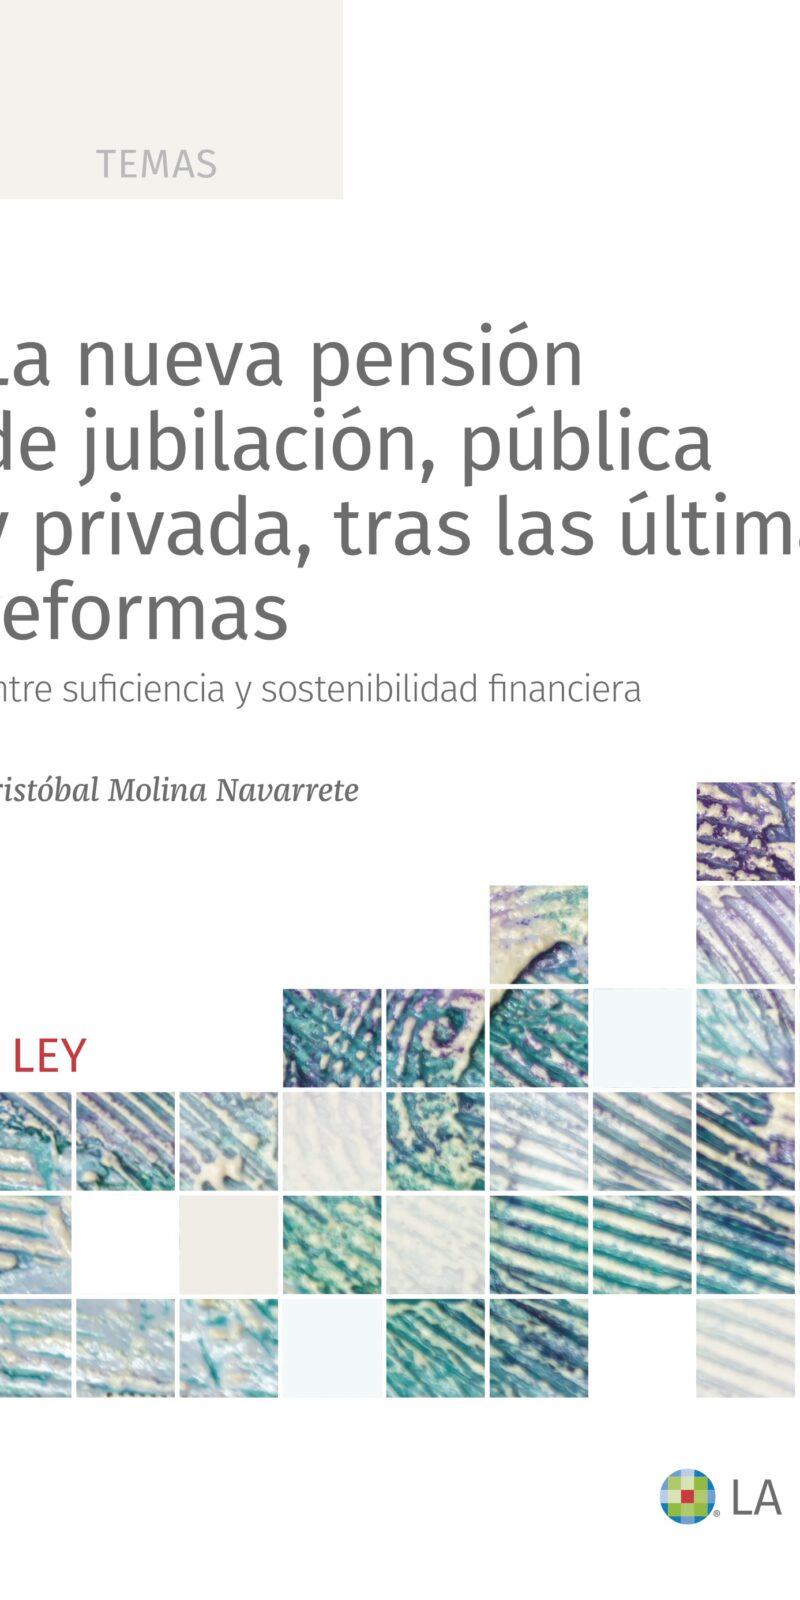 pública y privada, tras las últimas reformas Entre suficiencia sostenibilidad financiera